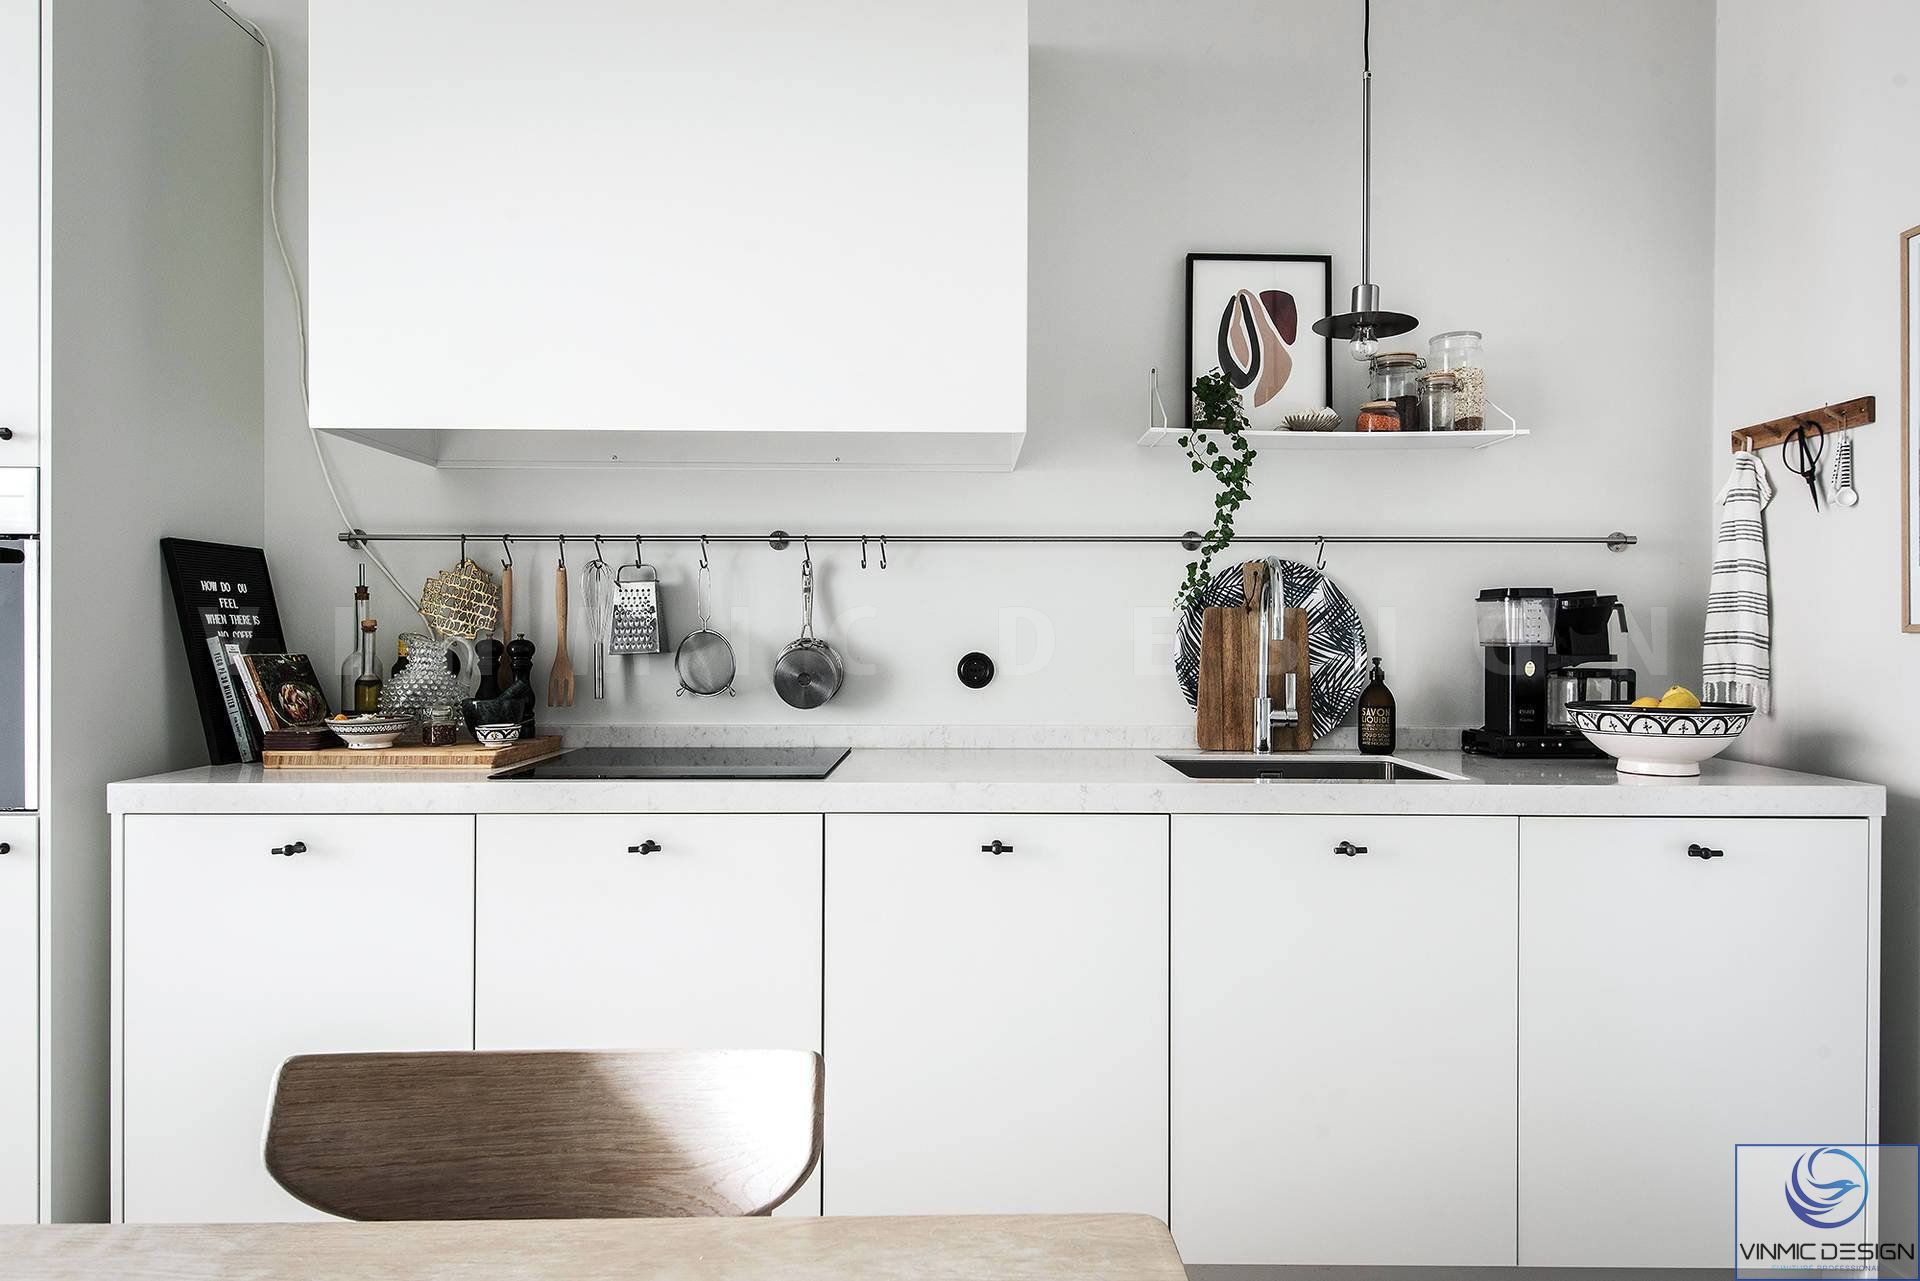 Sự đơn giản của tủ bếp với phong cách Scandinavian